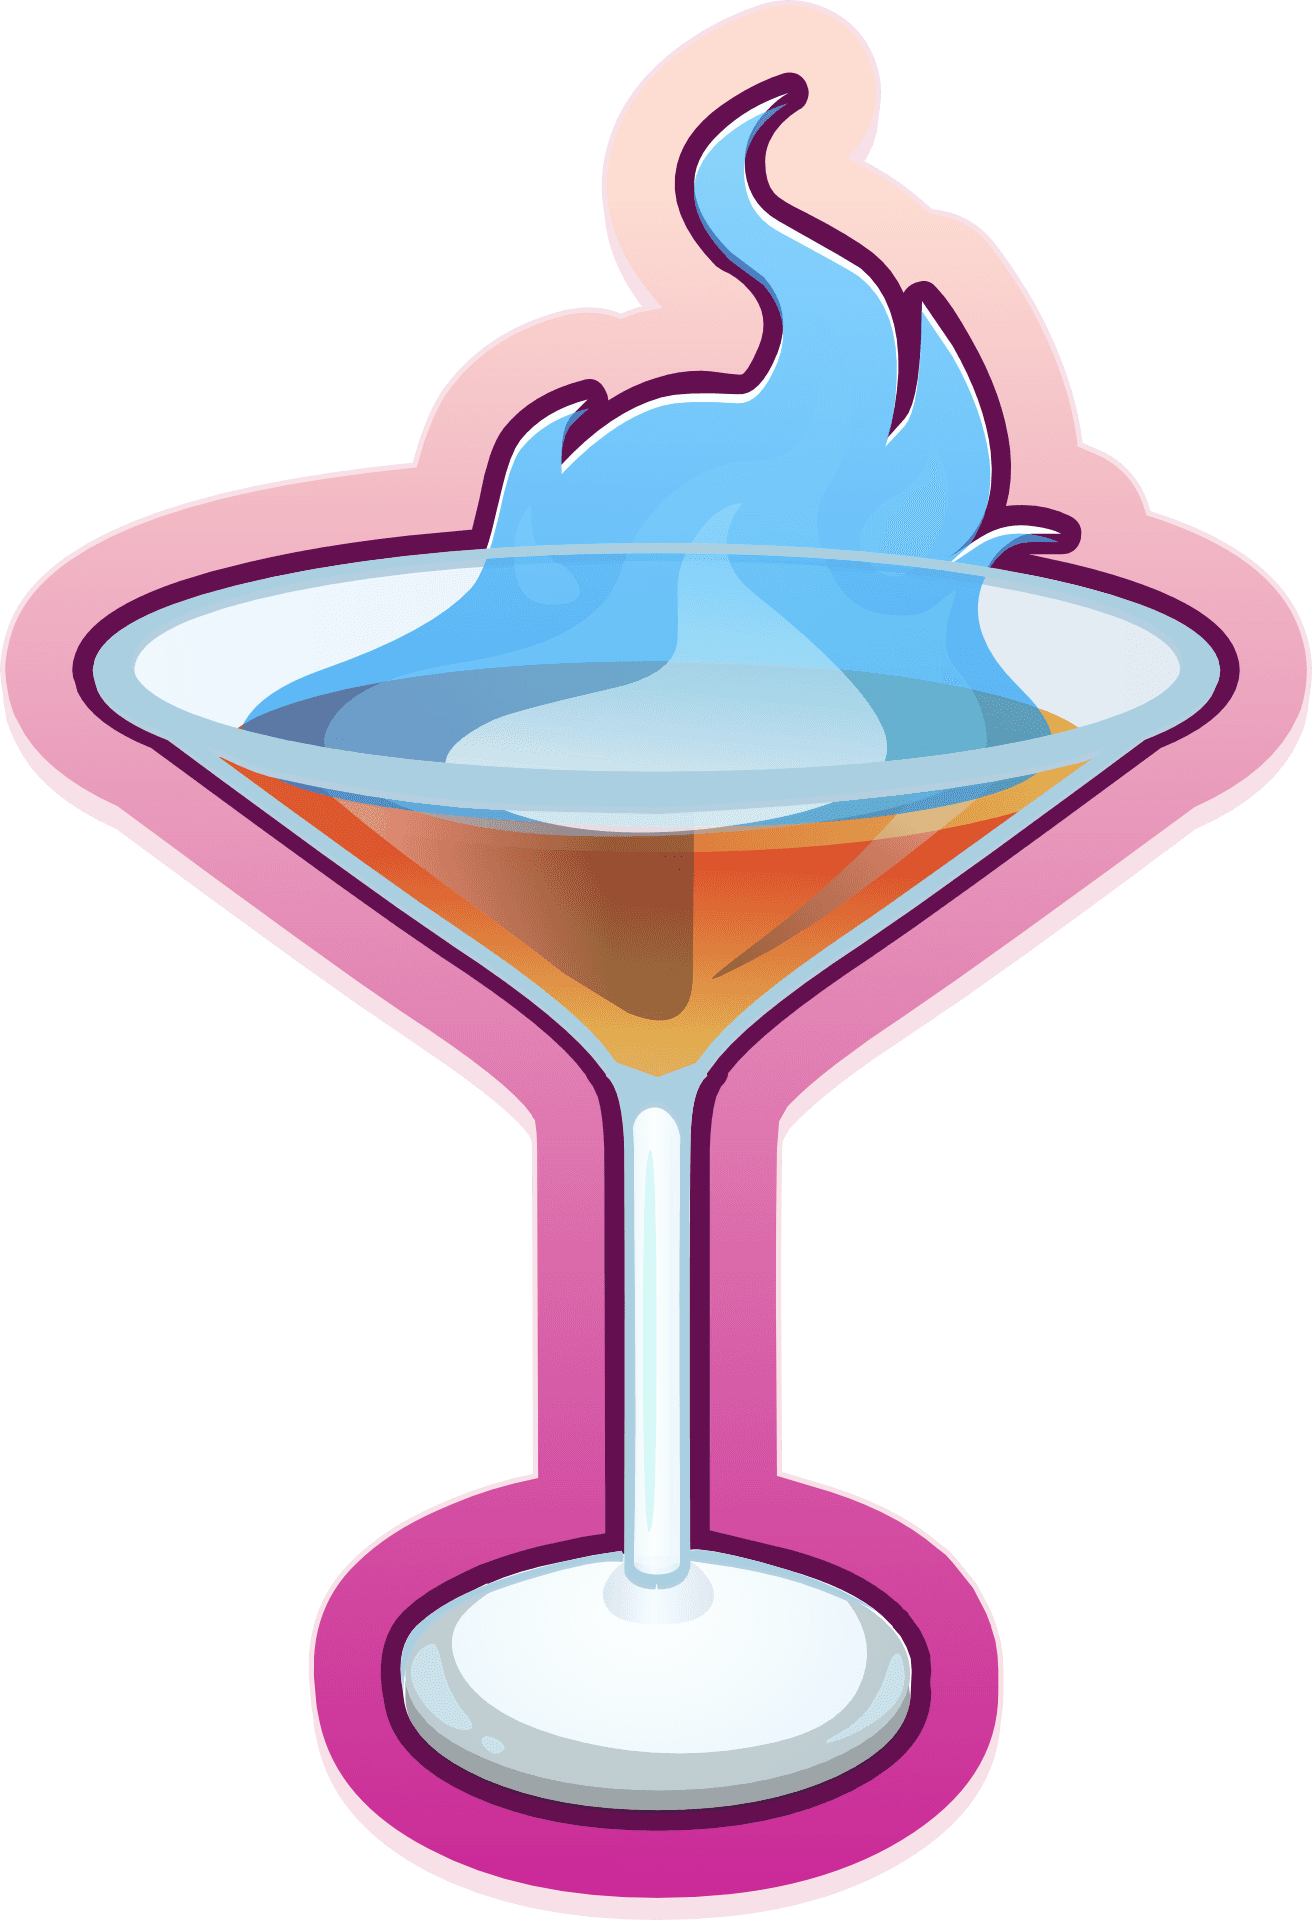 Blue Flame Cocktail Illustration PNG image